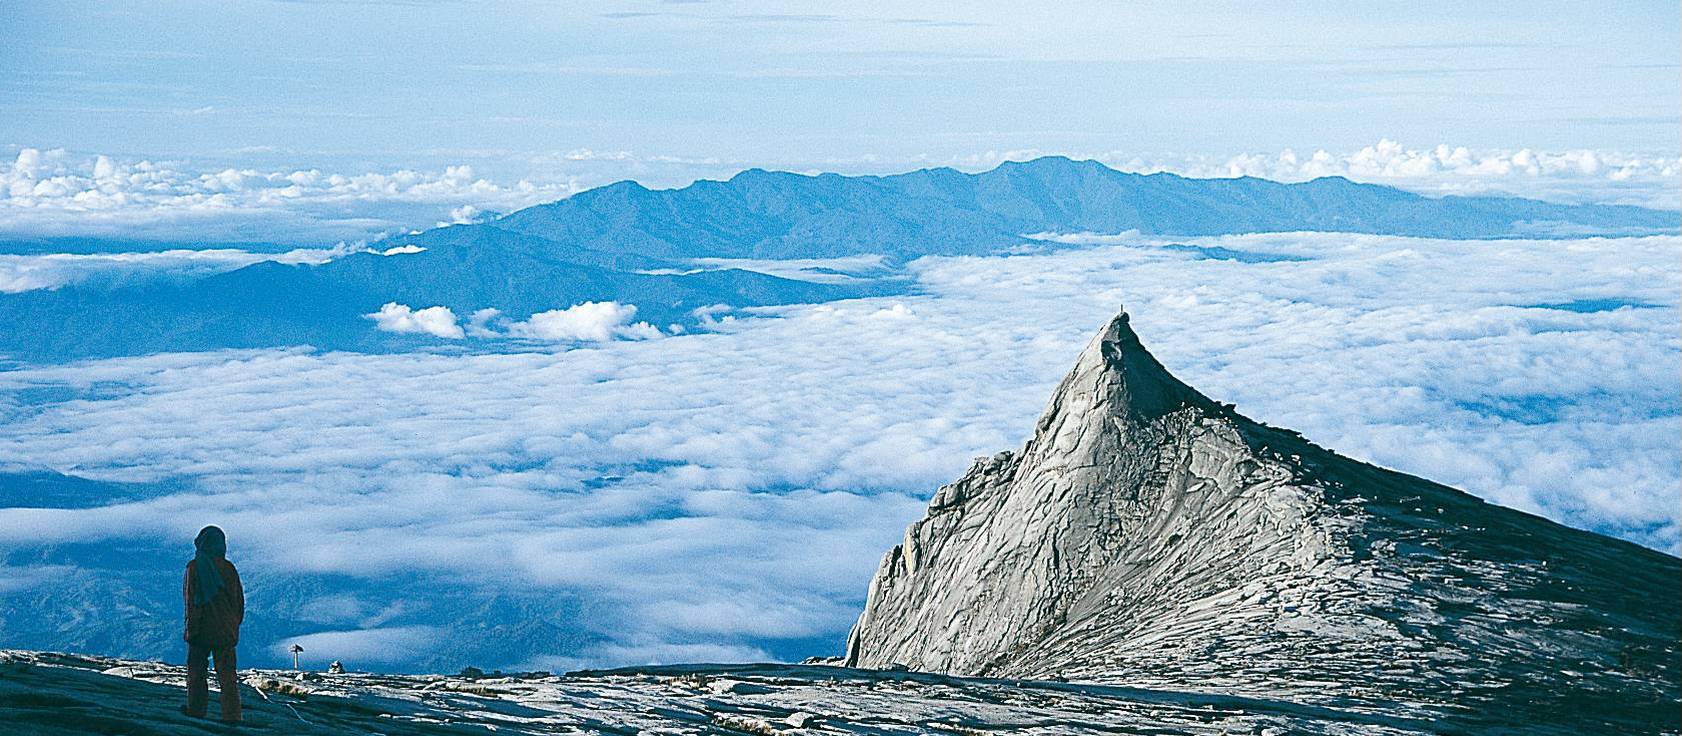 Fansipan của Việt Nam nằm trong danh sách 4 ngọn núi nên chinh phục dịp cuối năm